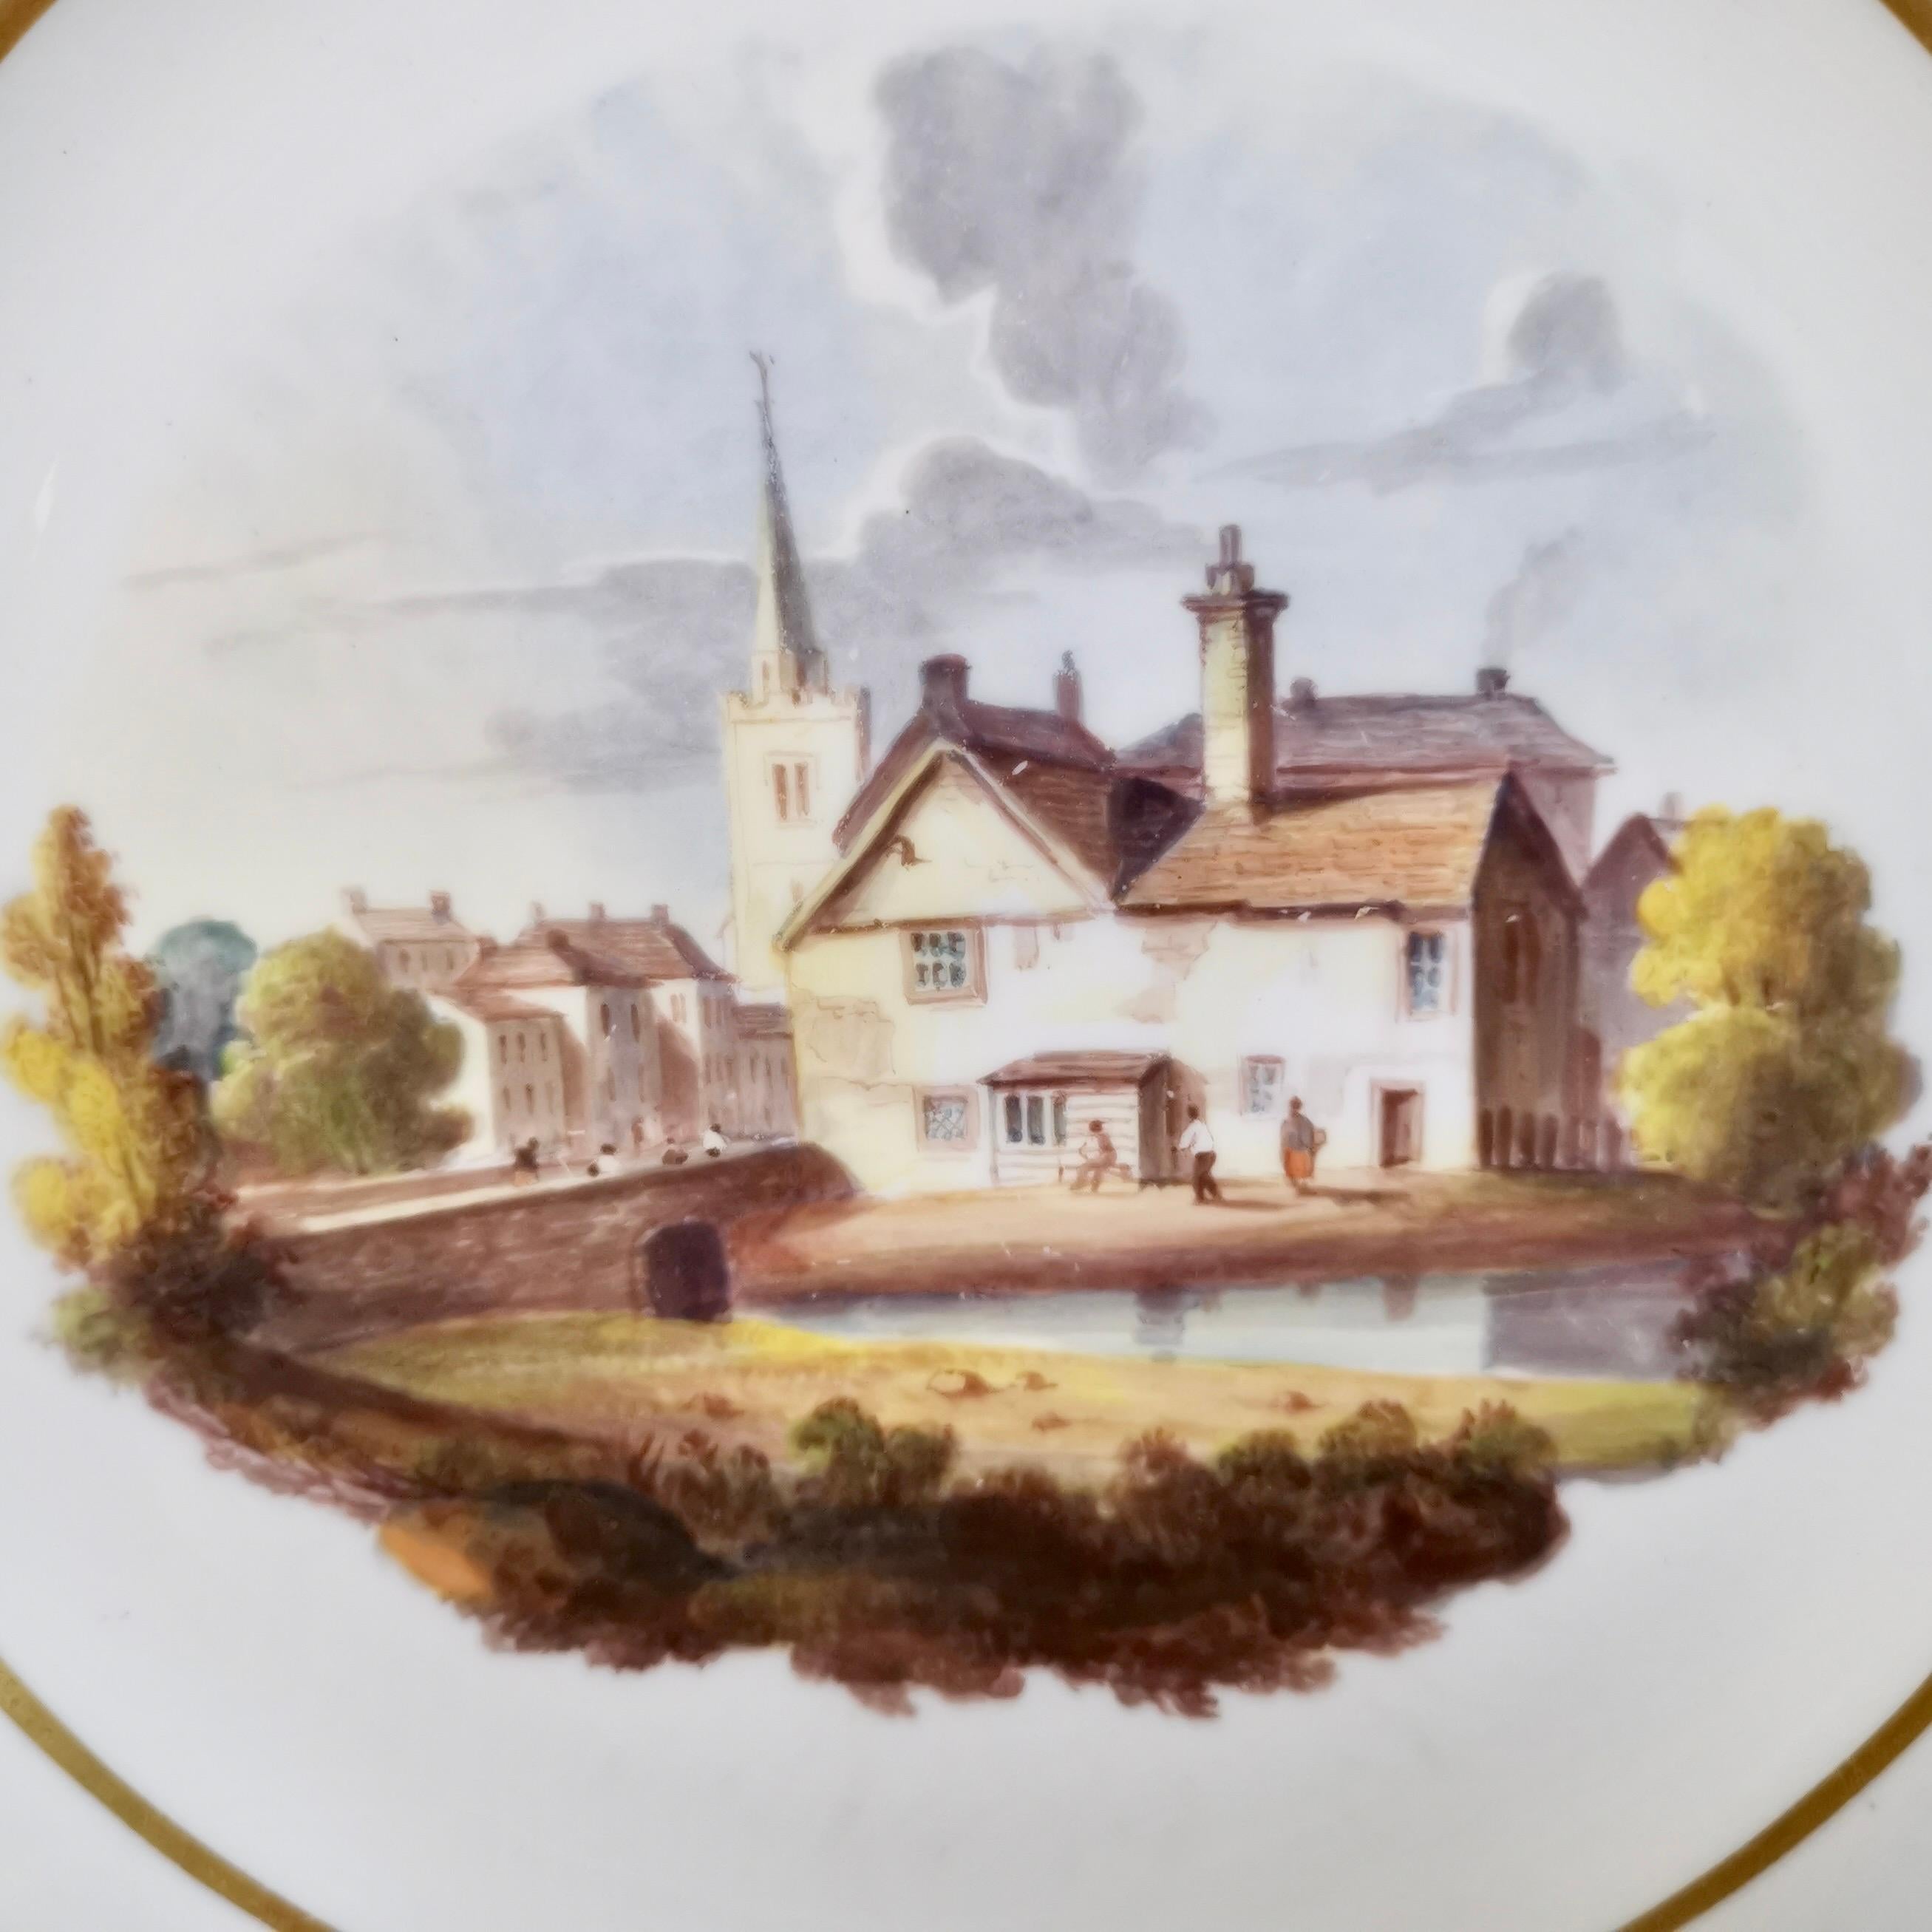 Il s'agit d'une assiette à dessert fabriquée par Spode vers 1822, c'est-à-dire à l'époque de la Régence. L'assiette est fabriquée en porcelaine Felspar et décorée d'une magnifique scène de paysage peinte à la main. L'assiette aurait appartenu à un